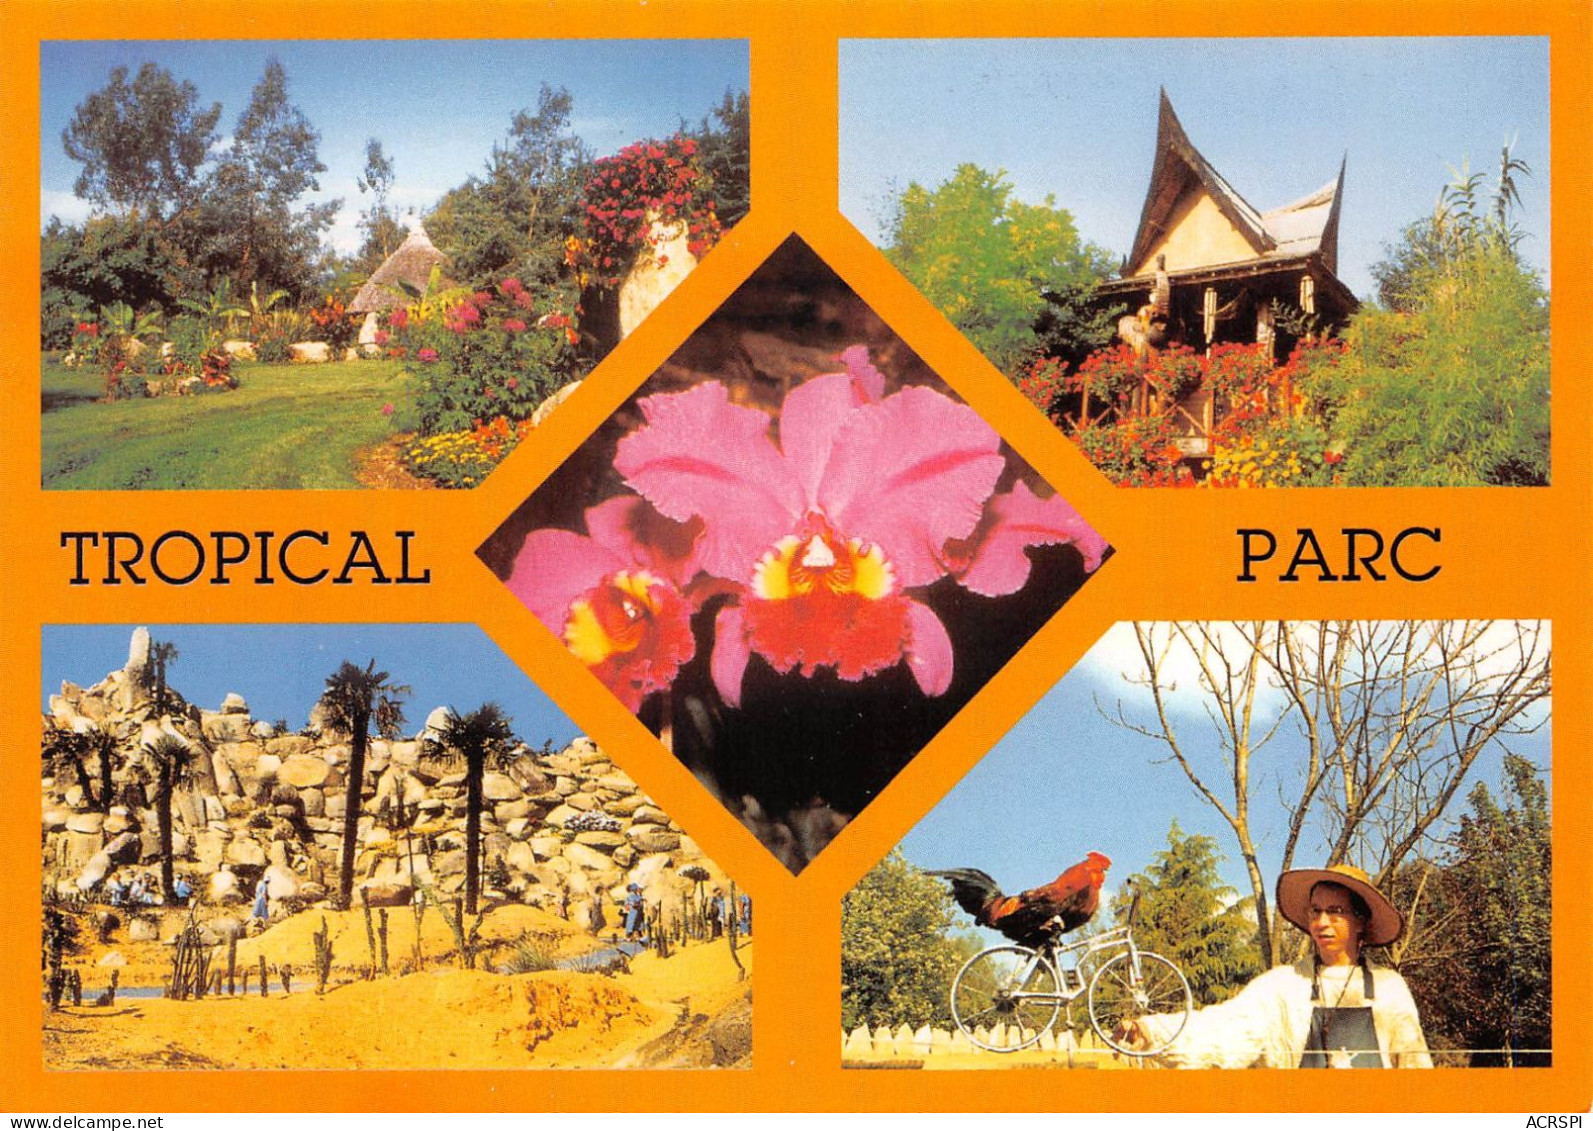 56 Saint-Jacut-les-Pins LAUGAREL Tropical Floral Parc (Scan R/V) N° 15 \MS9035 - Rochefort En Terre